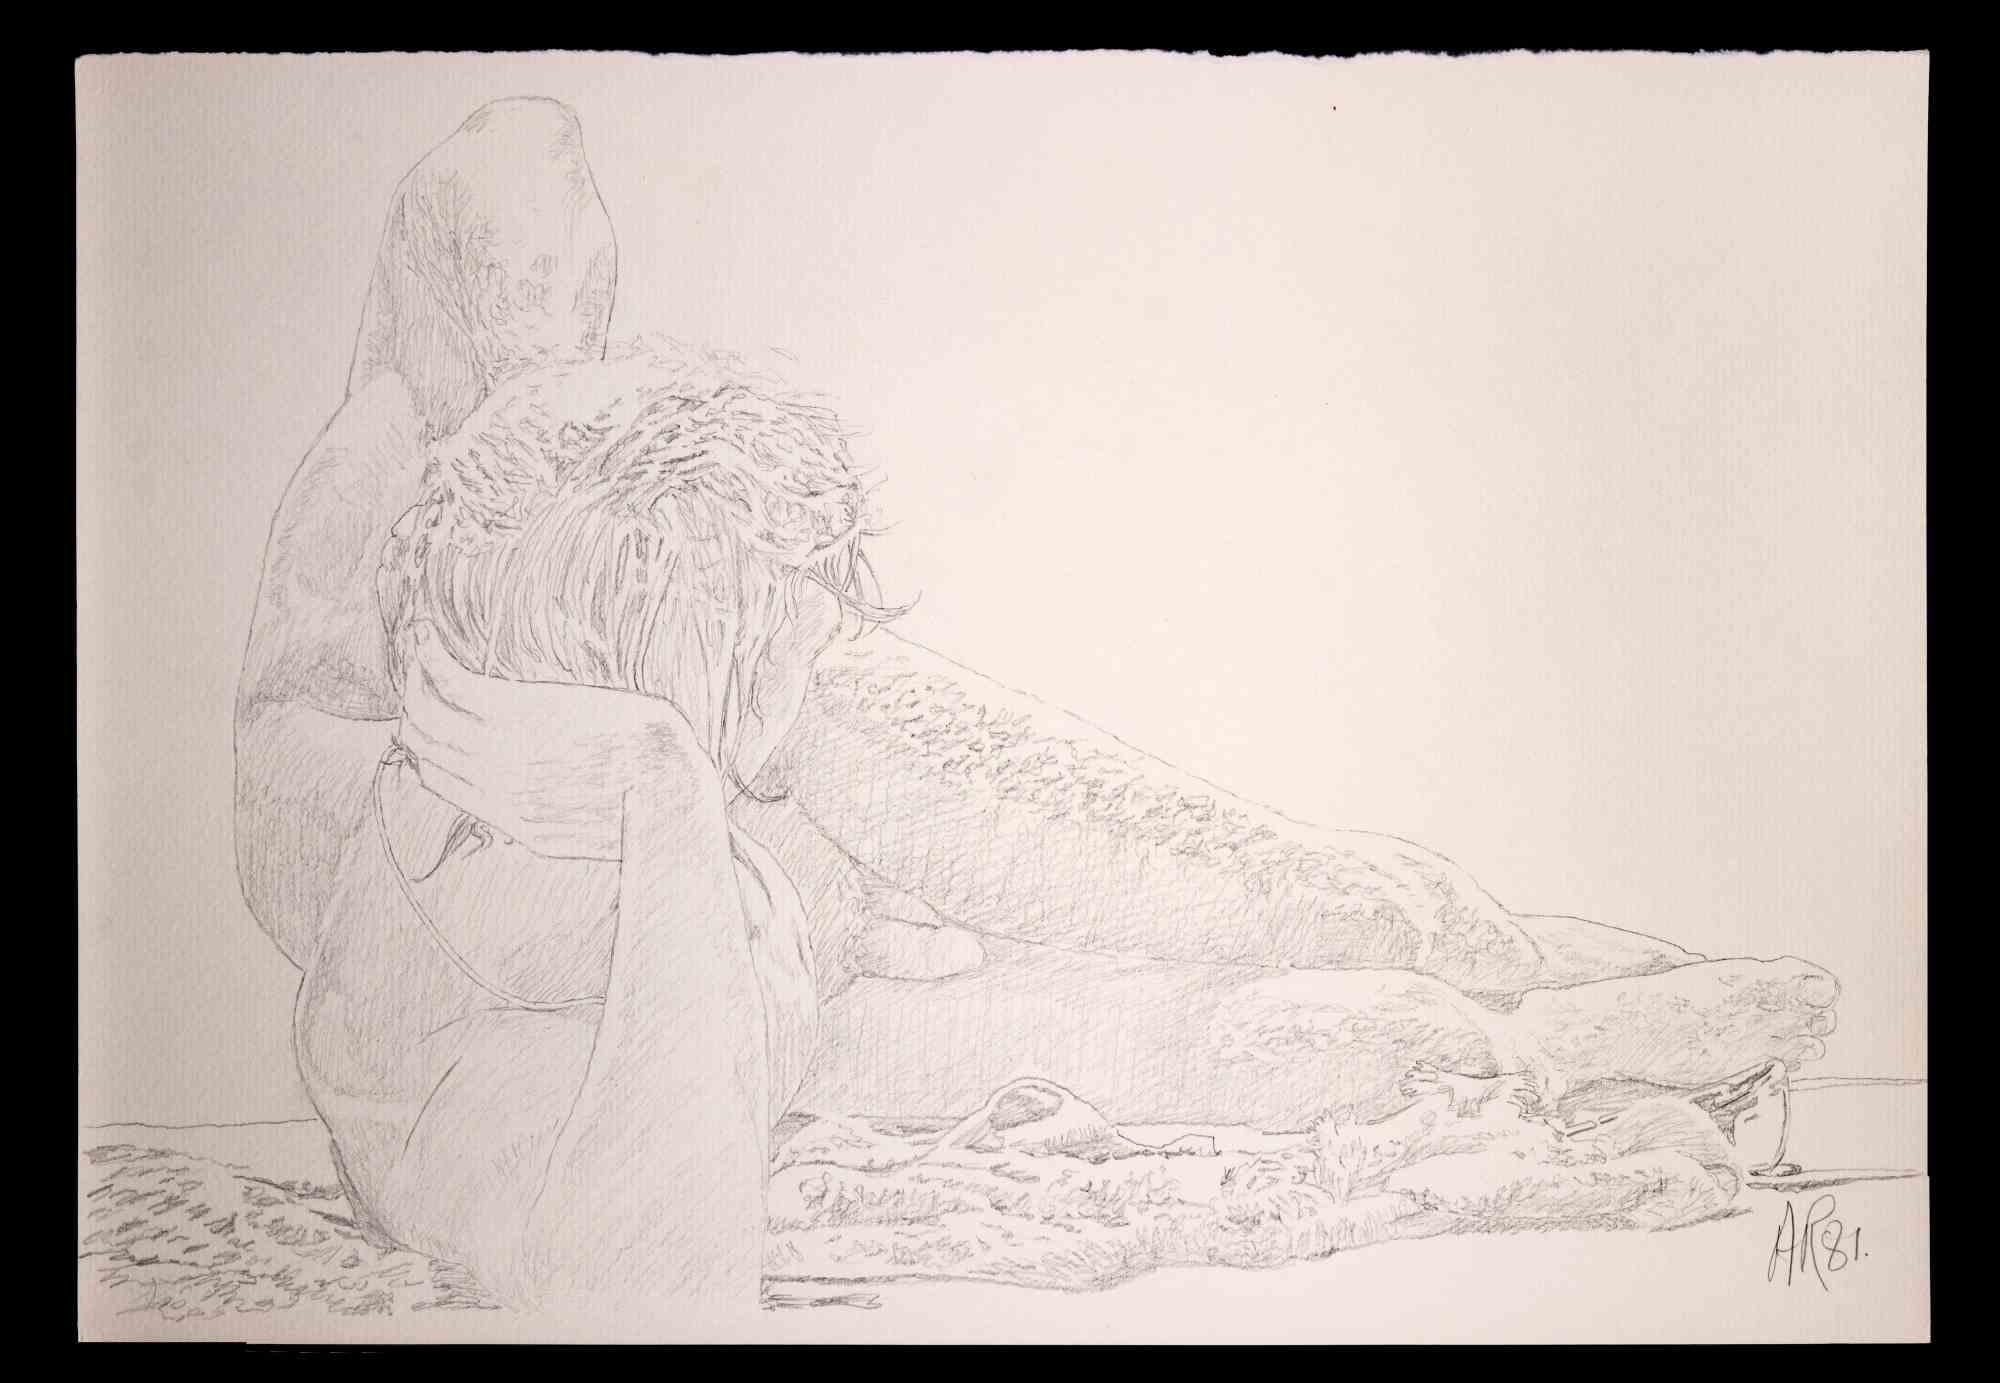 Junge liegend ist eine Originalzeichnung mit Bleistift von Anthony Roaland aus dem Jahr 1981. Handsigniert und datiert vom Künstler am unteren rechten Rand. 

Im Vordergrund ist die Figur in einem zarten und harmonischen Stil abgebildet.

Gute